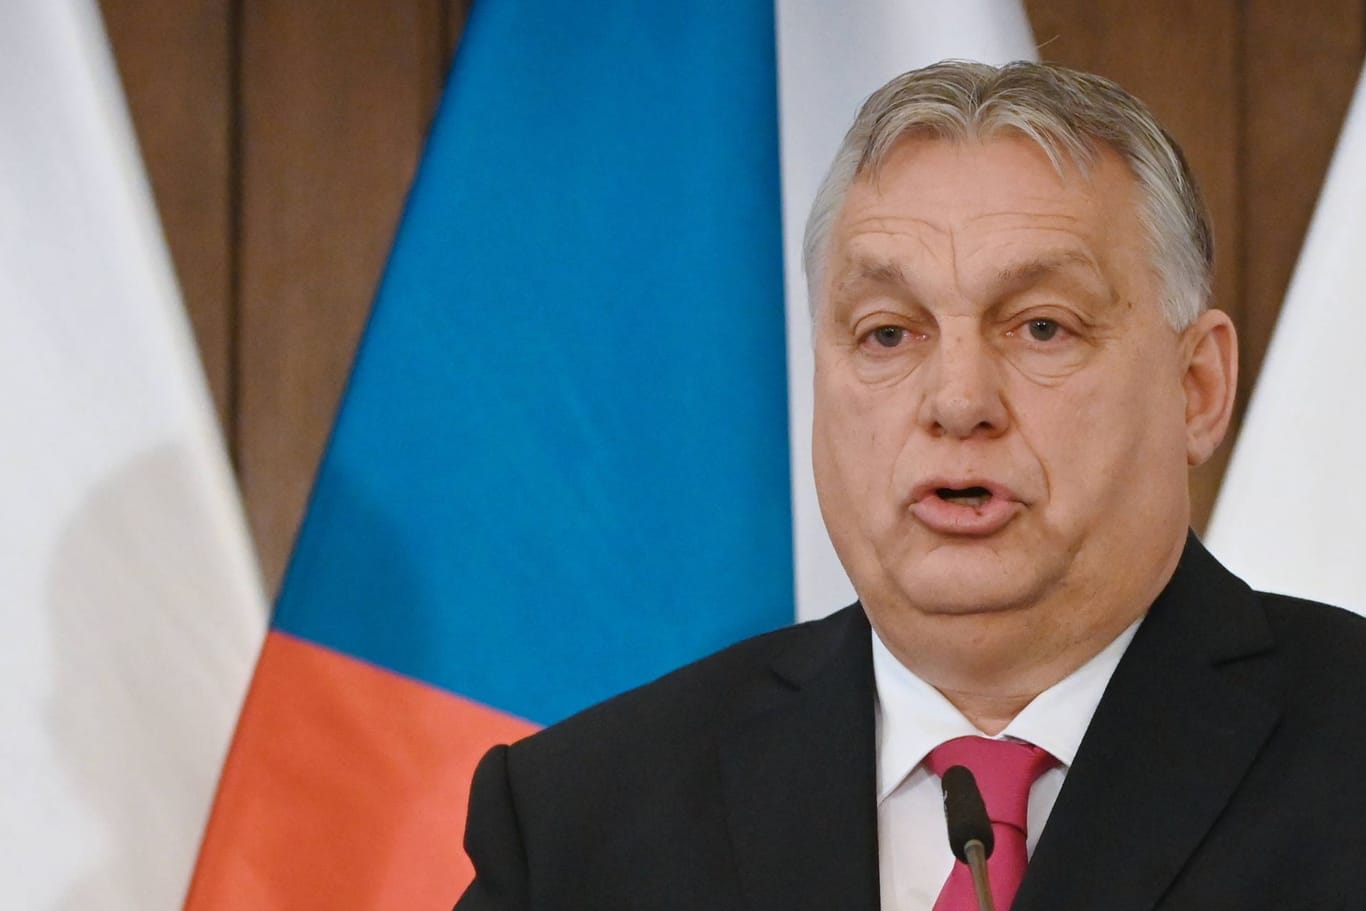 Viktor Orbán spricht bei einer Veranstaltung (Archivbild): Er forderte bei einer Parteiveranstaltung einen Wechsel in Brüssel.